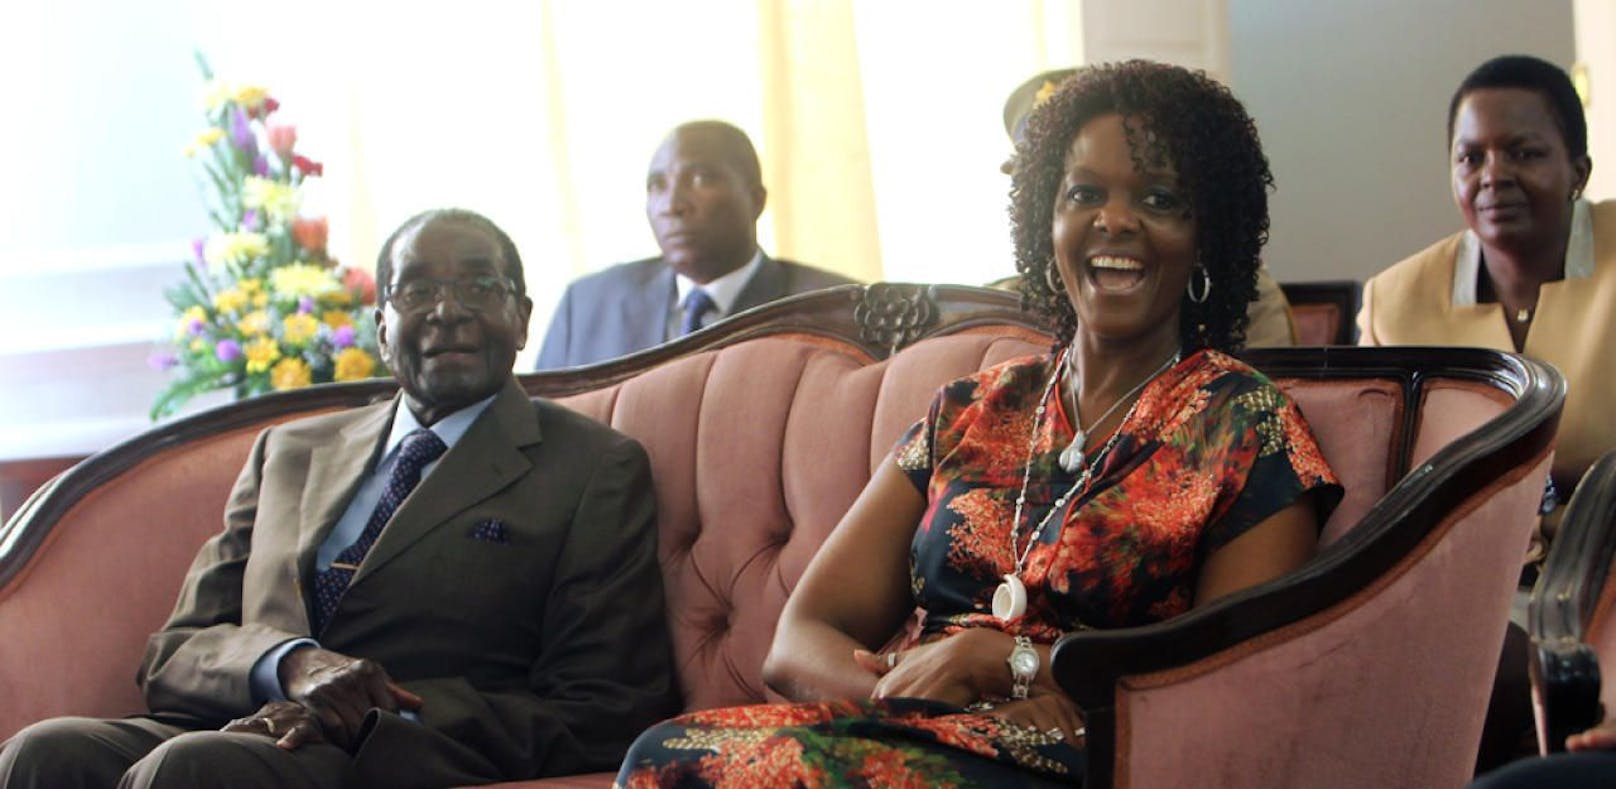 Hier sitzen Mugabe und seine "Gucci Grace" fest